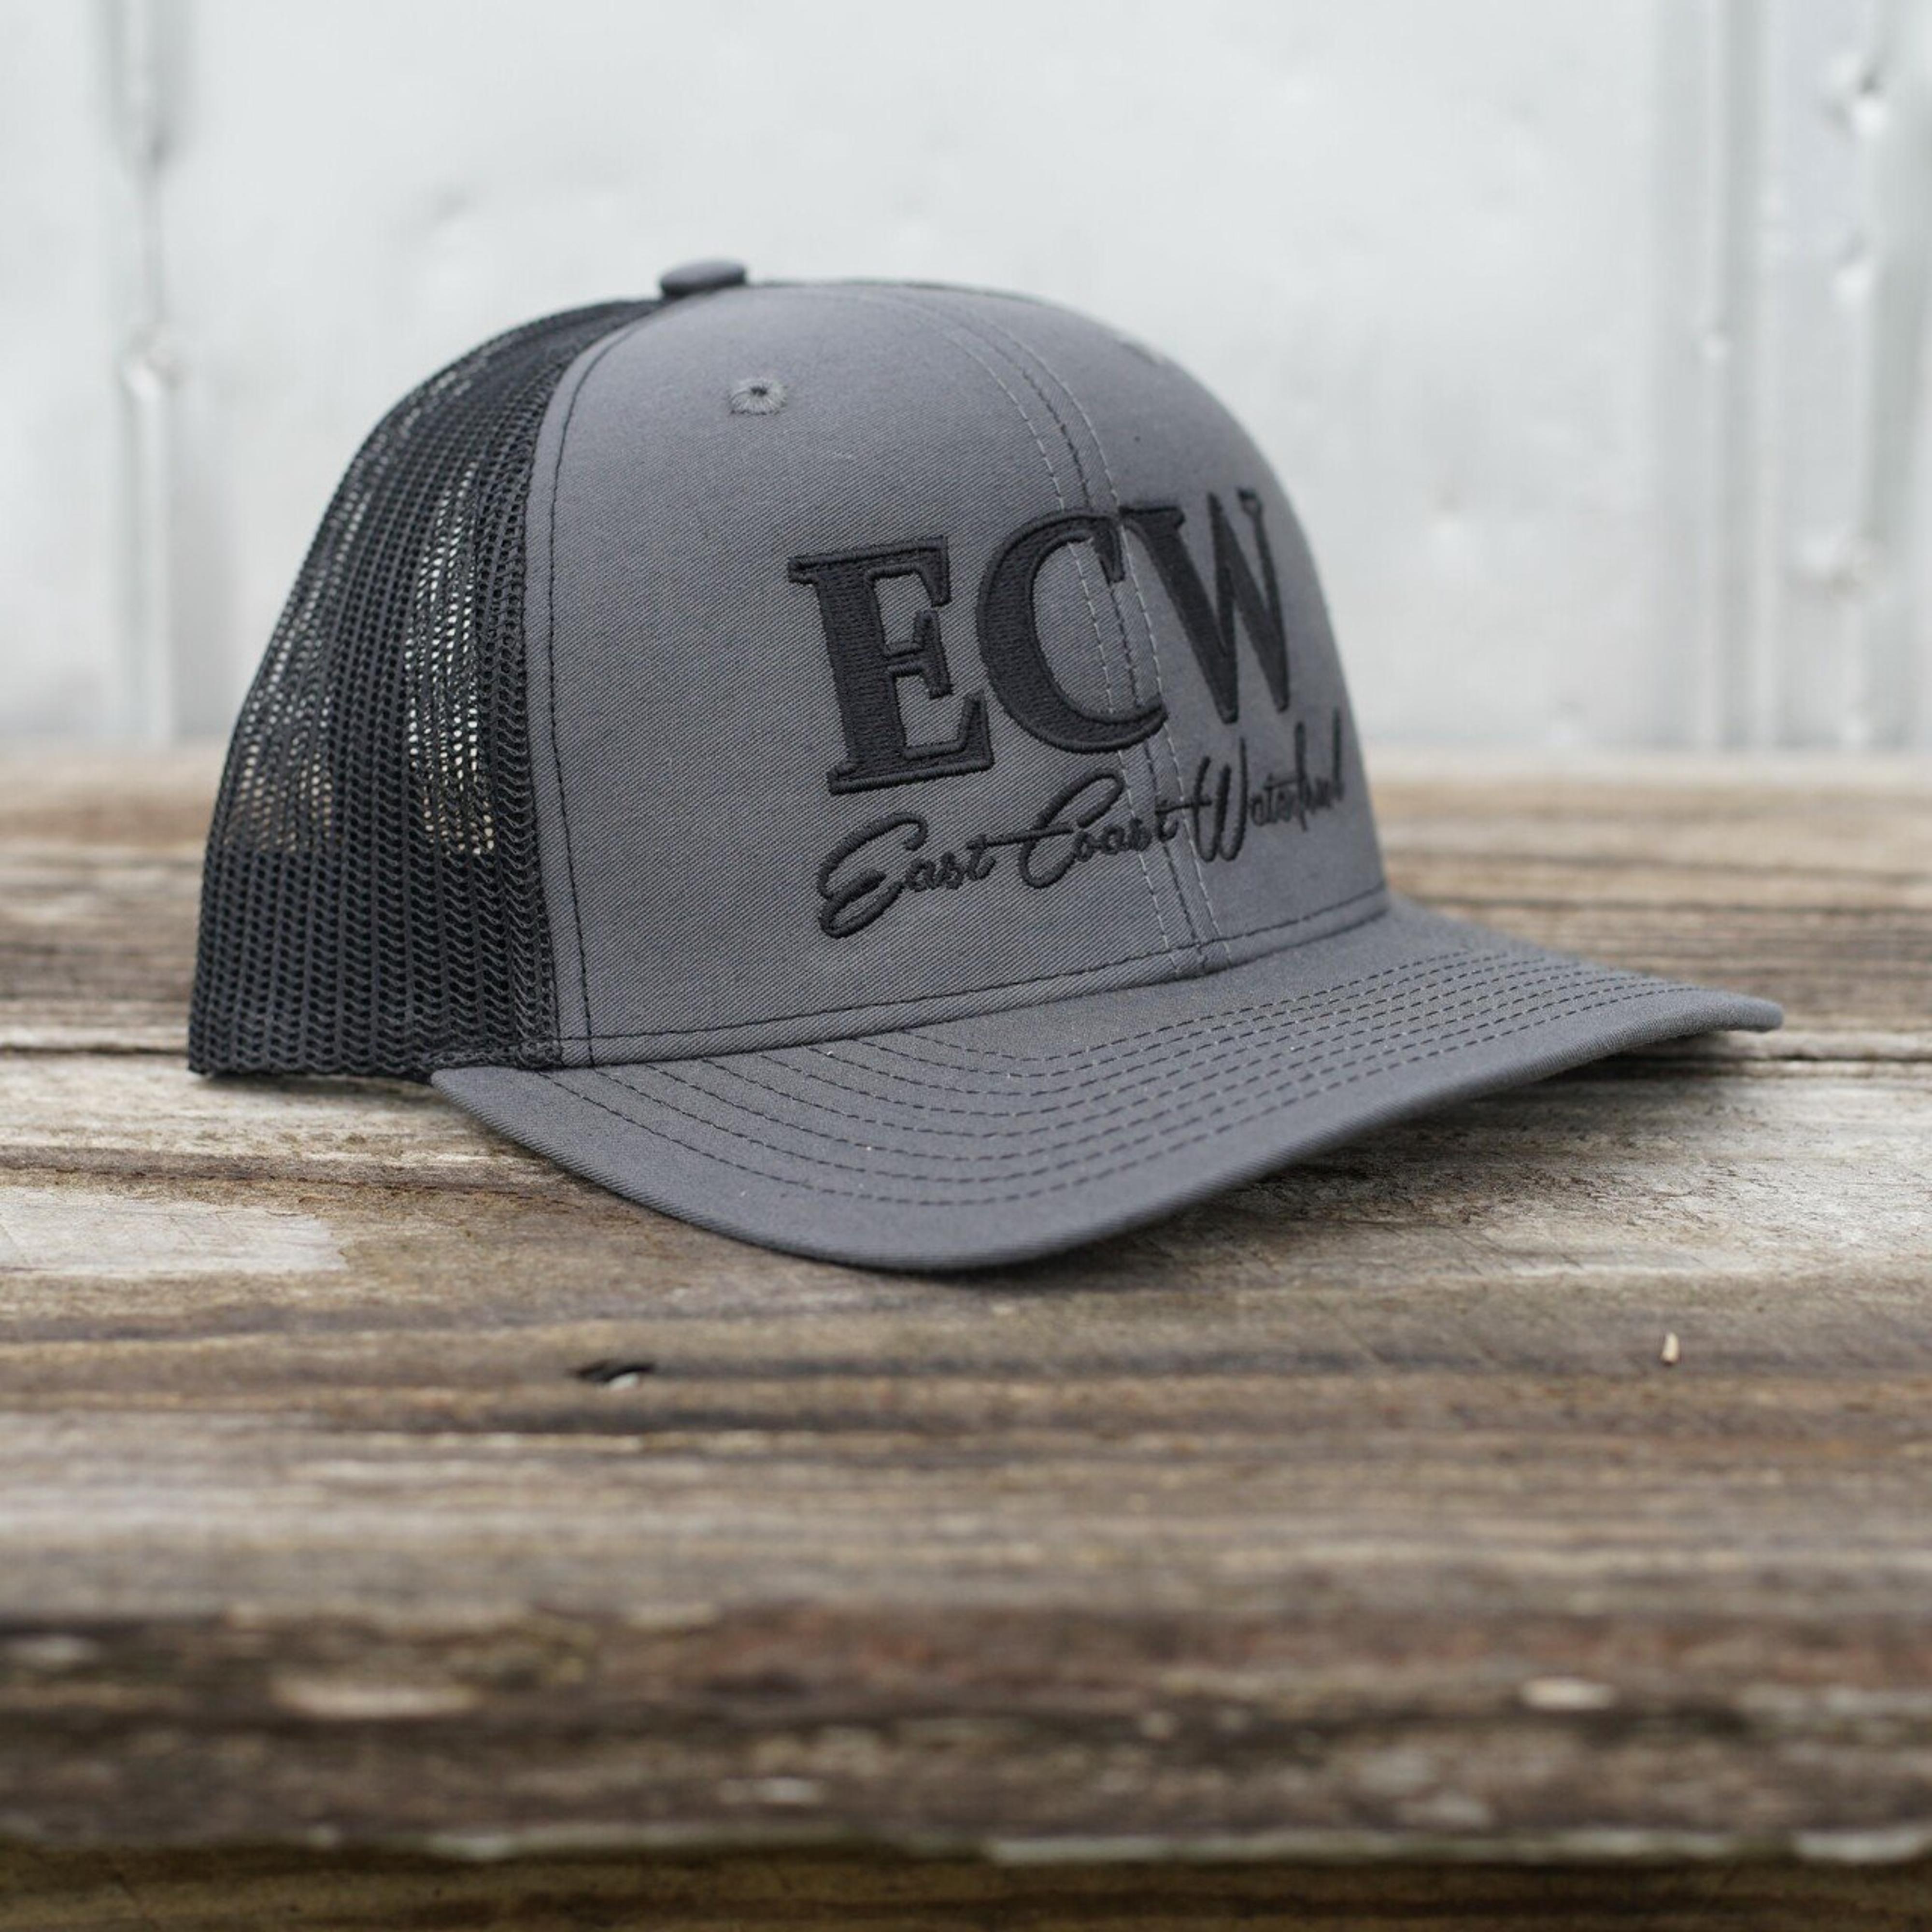  Ecw Logo Trucker Hat